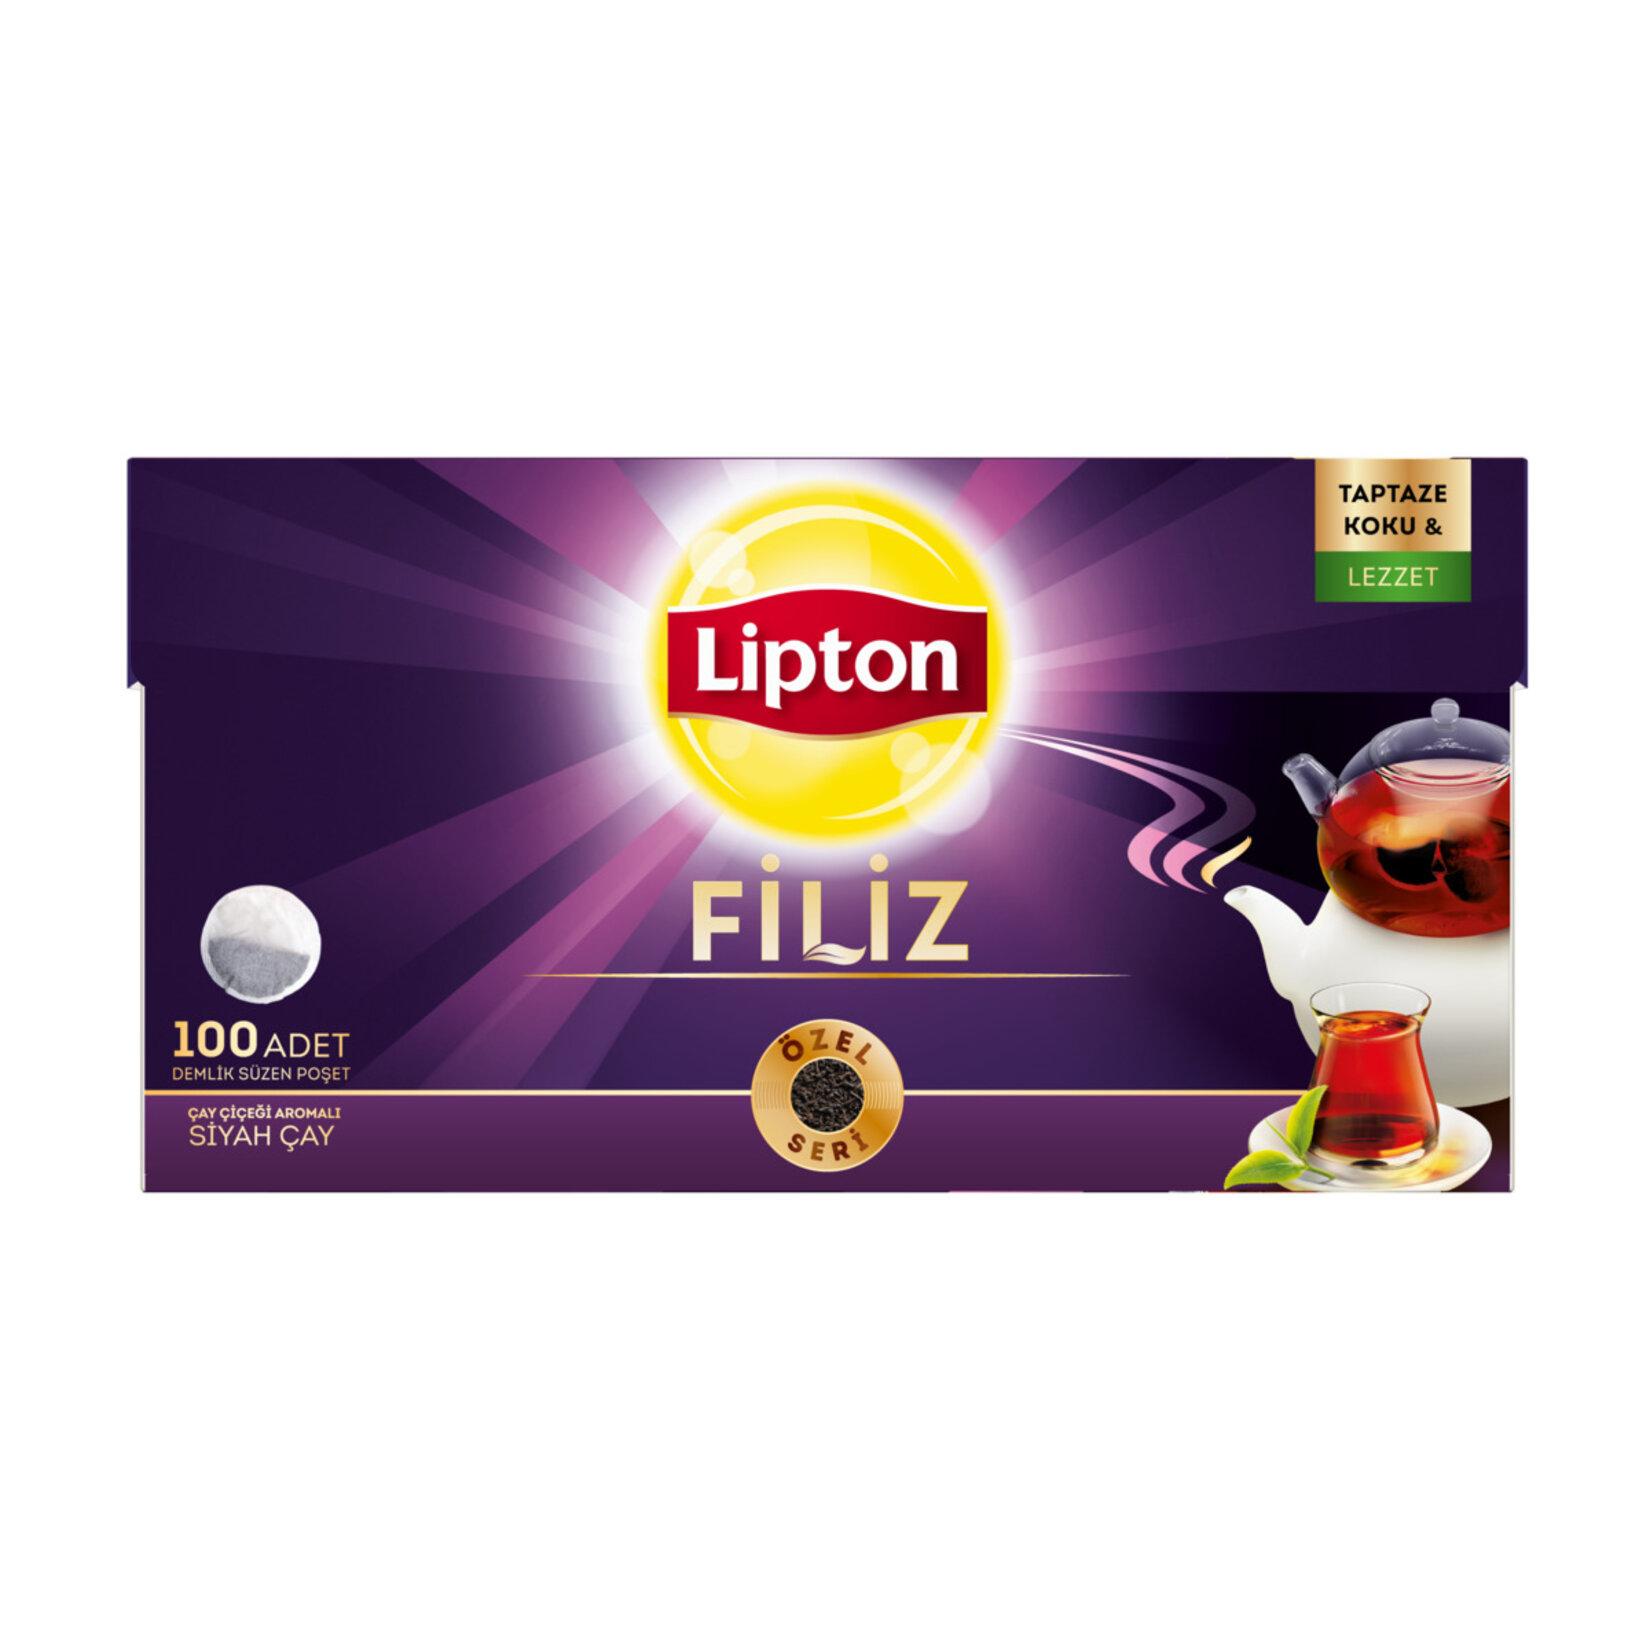 Lipton Filiz Demlik Poşet Çay 100'lü 6 Paket